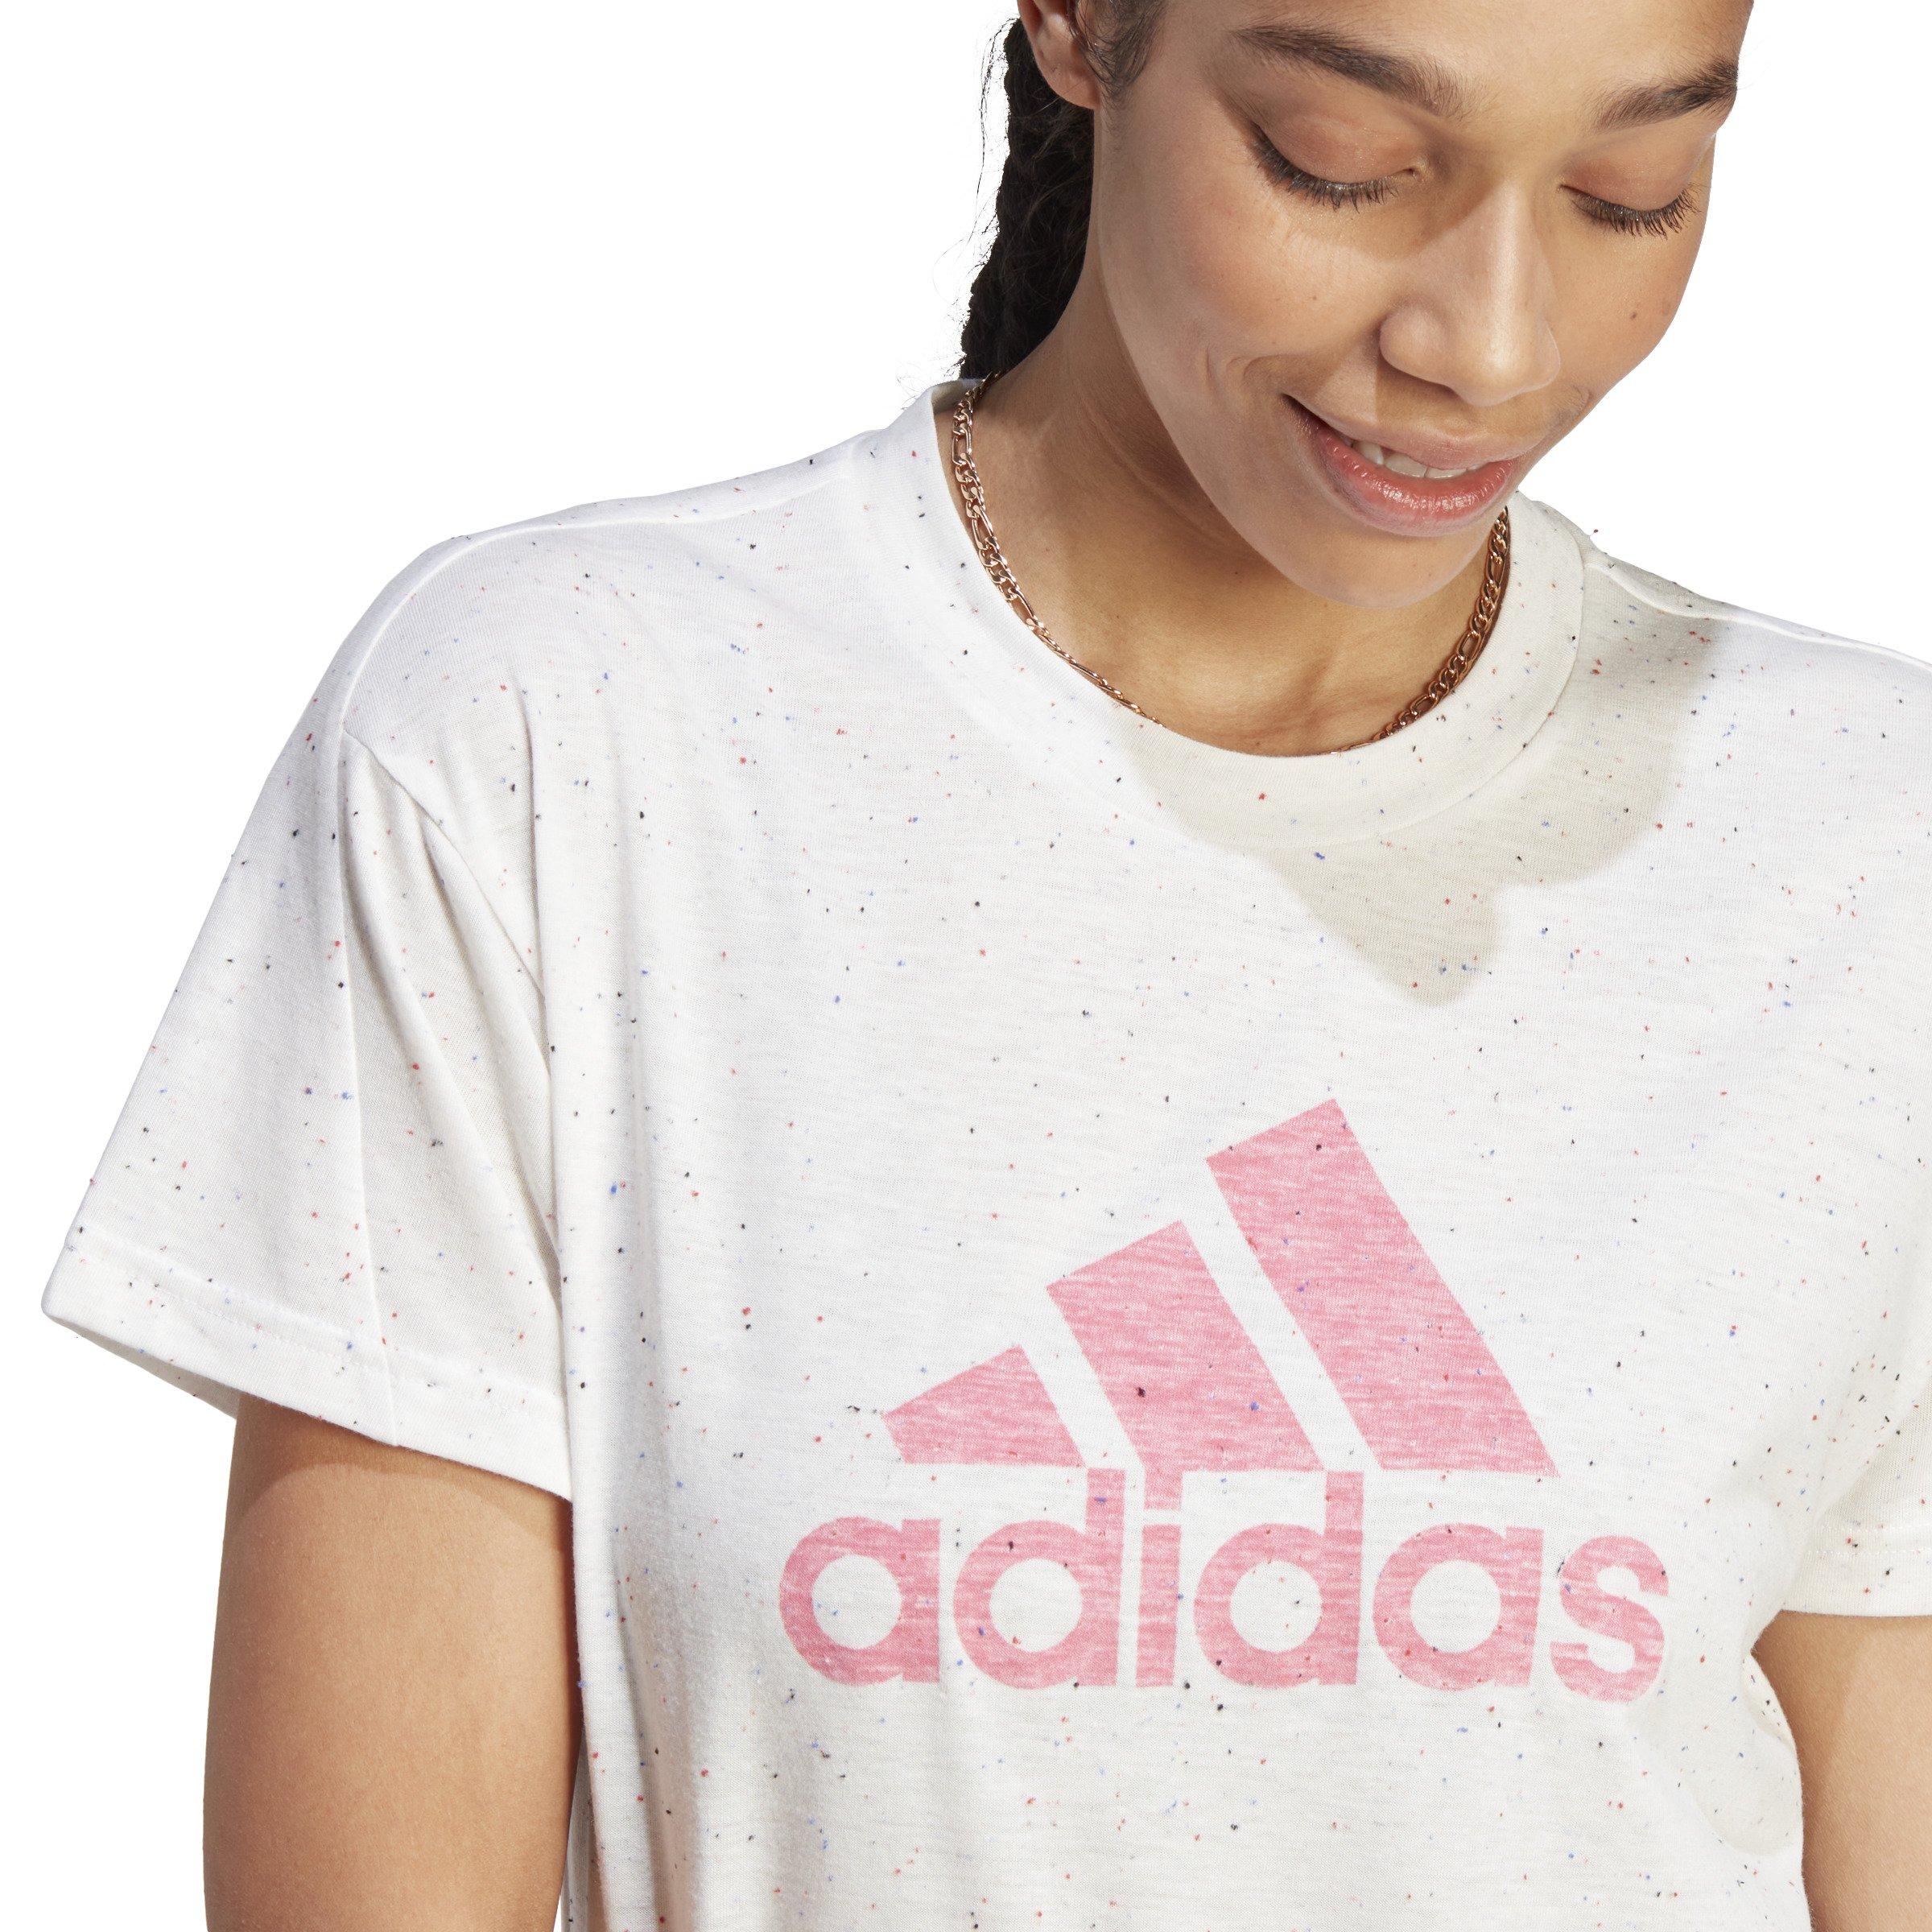 adidas Women's Future Icons Winners T-Shirt - White